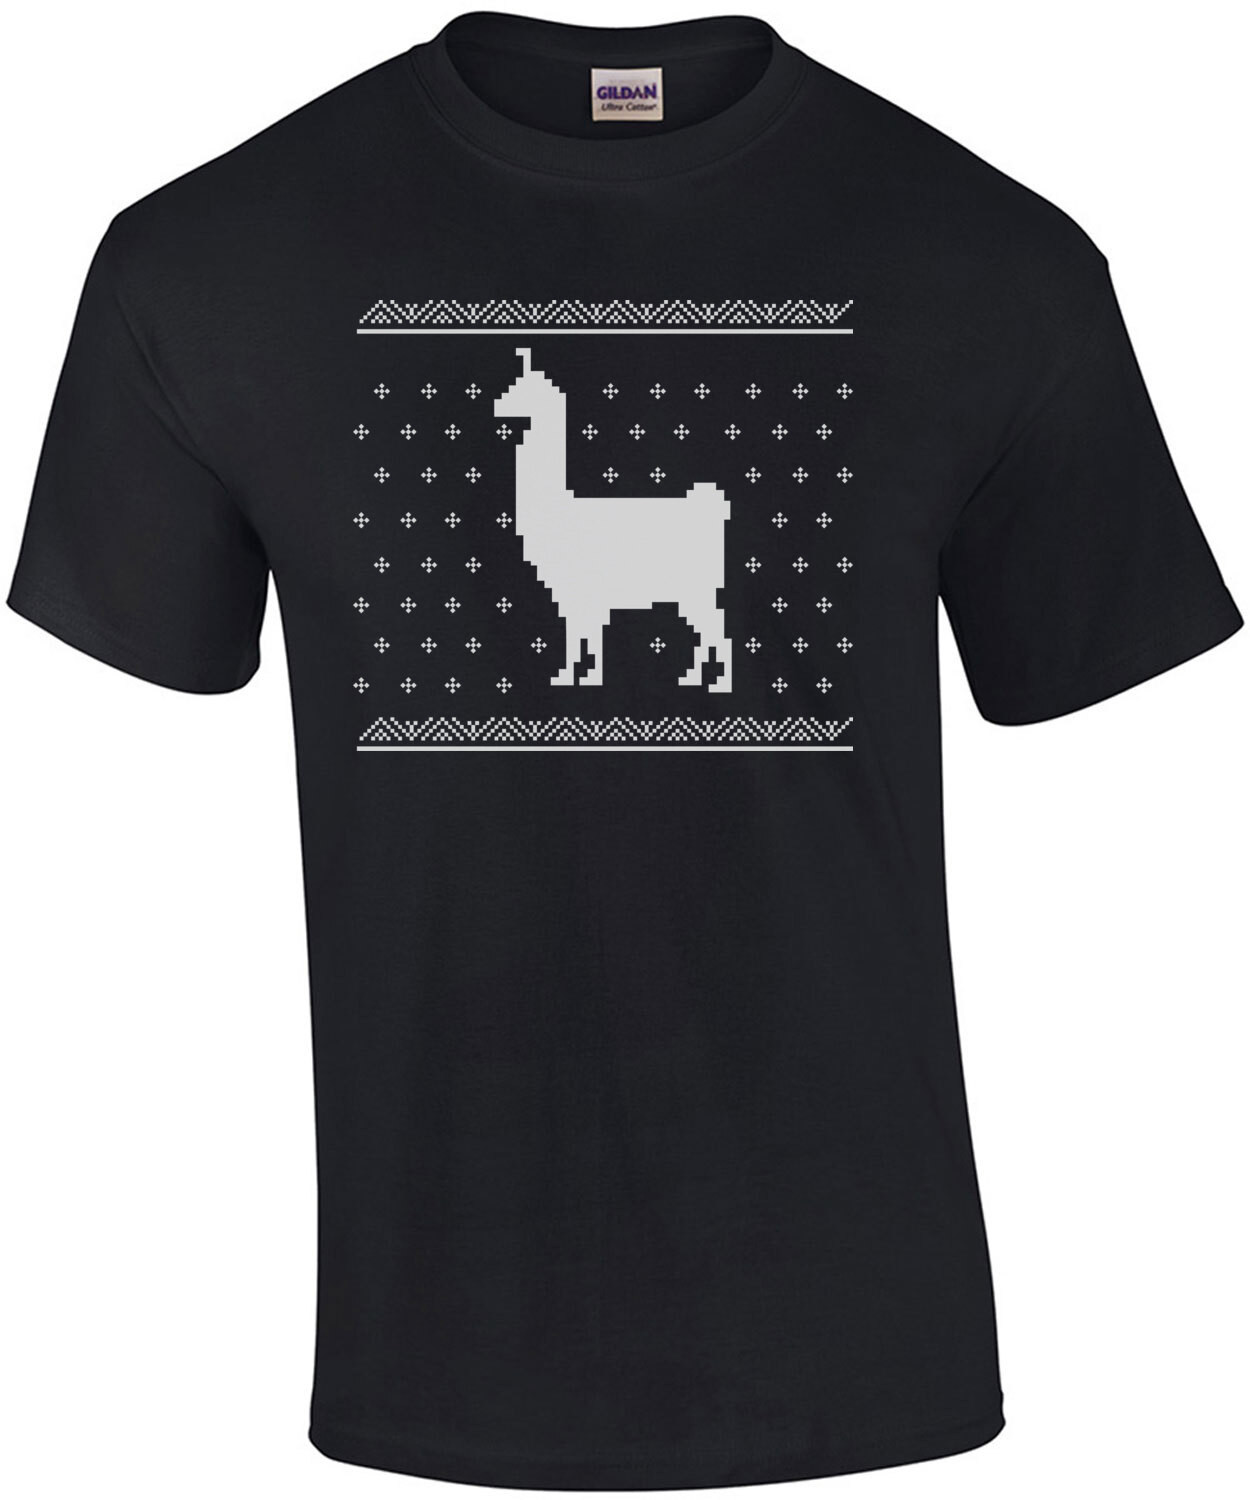 Llama - Ugly Christmas Sweater - Christmas T-Shirt